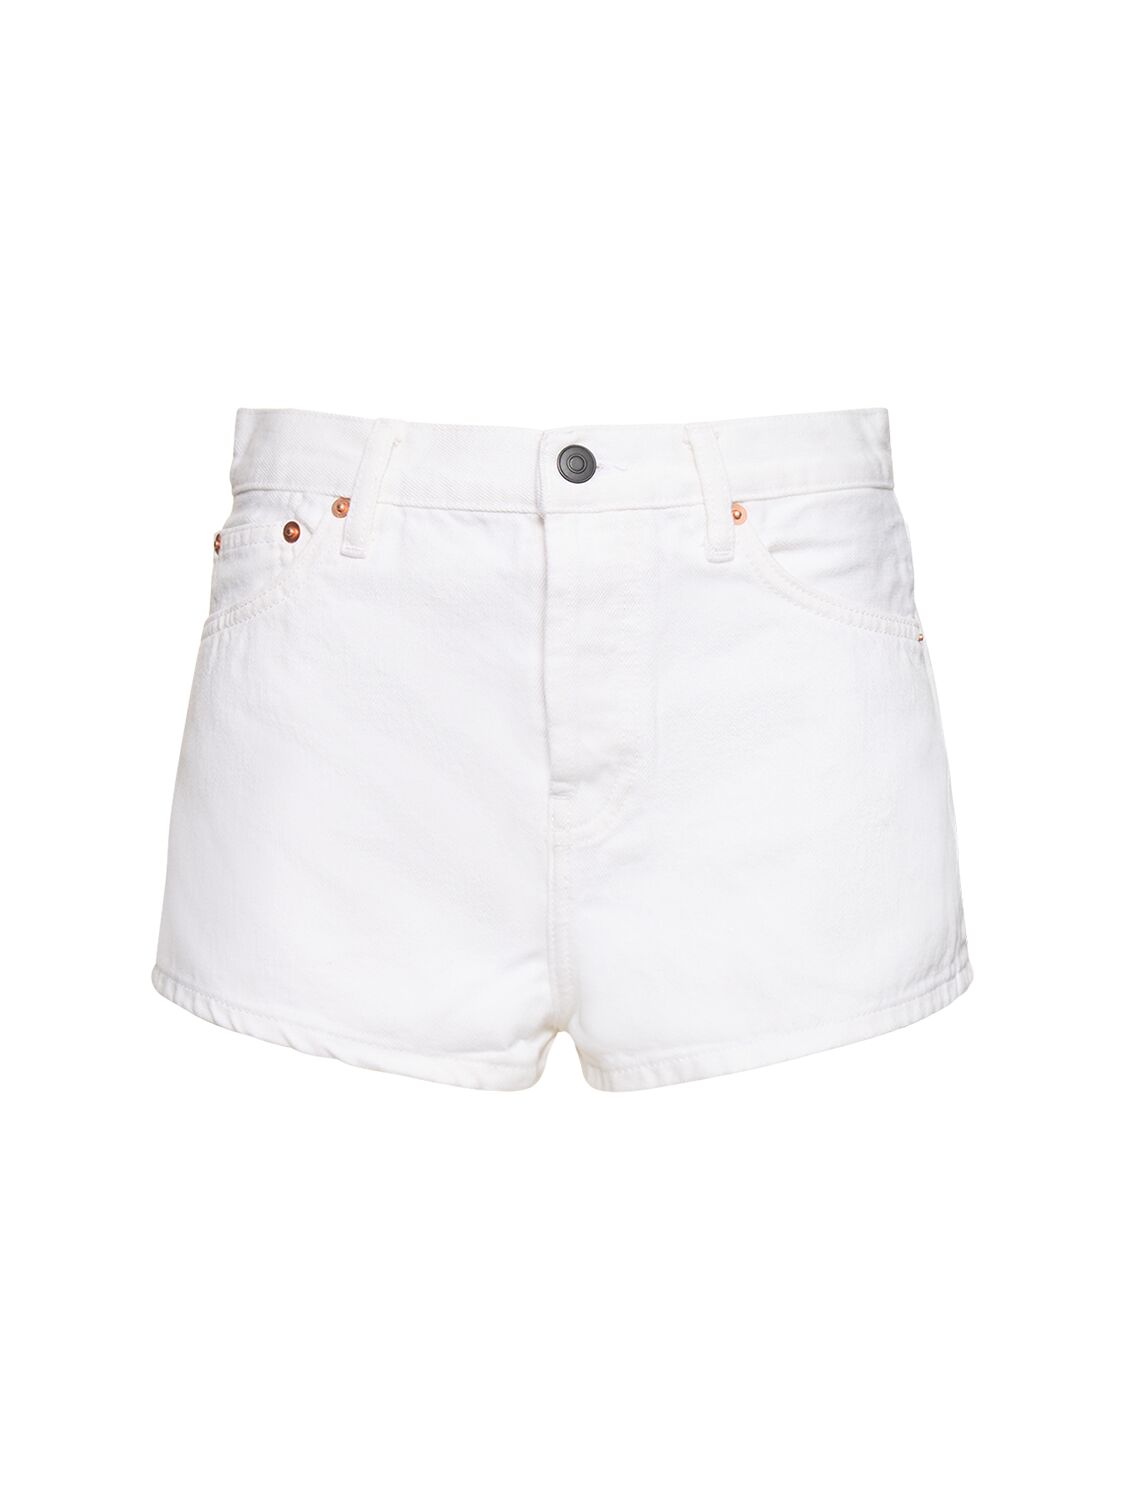 Wardrobe.nyc Cotton Denim Shorts In White